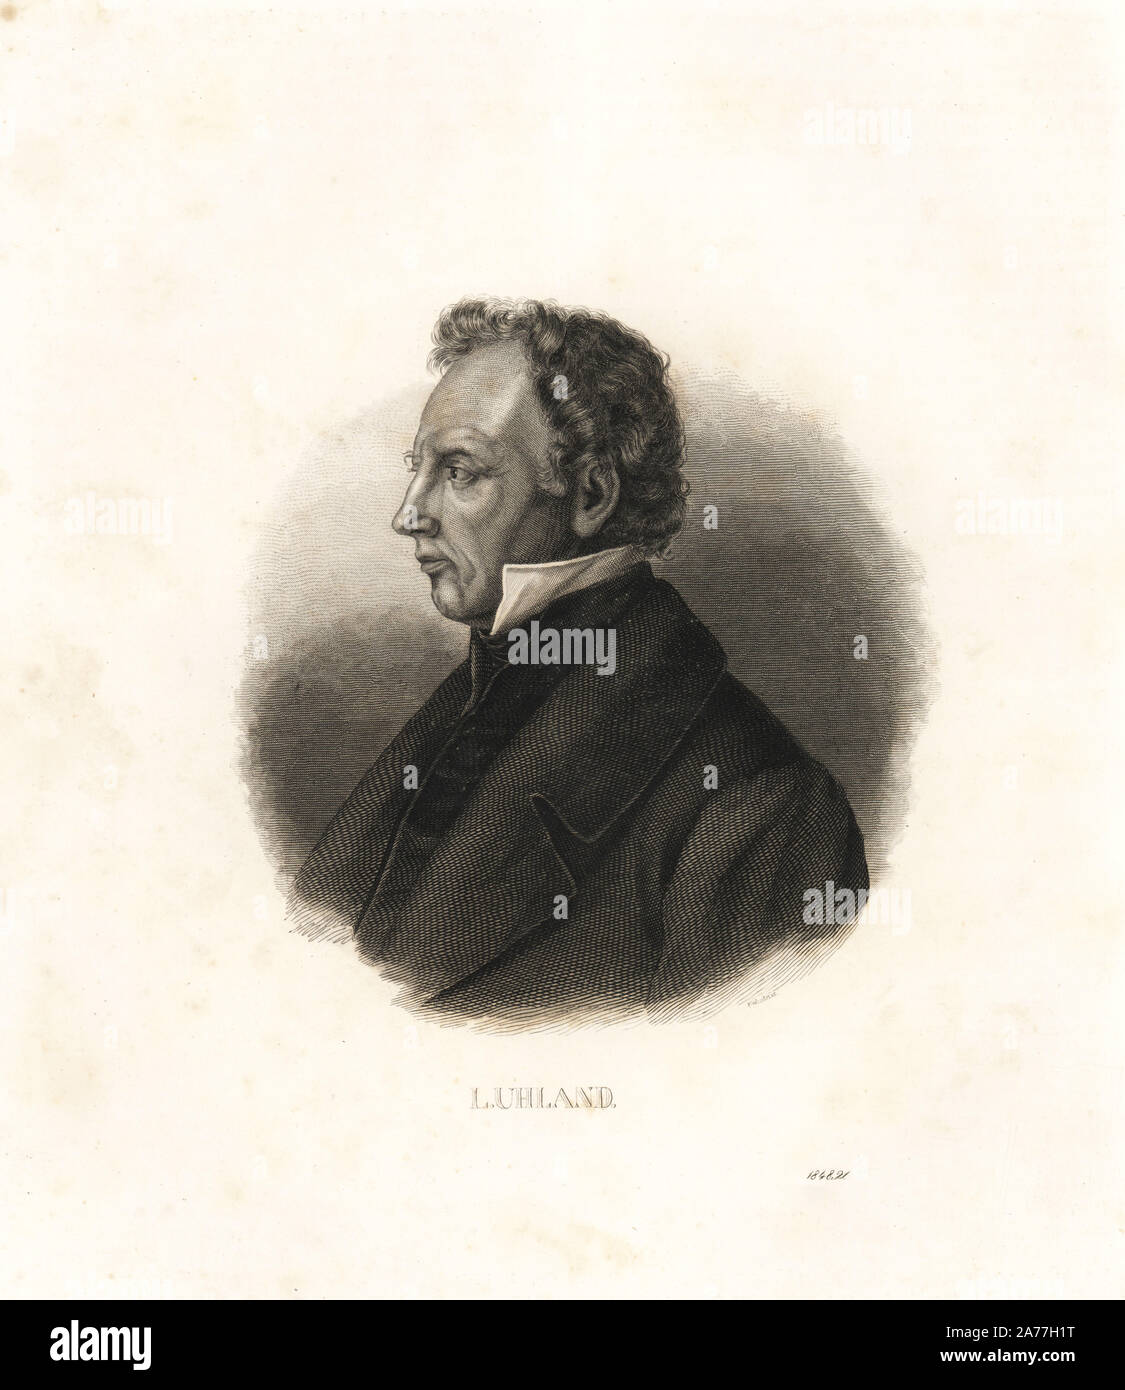 Johann Ludwig Uhland (1787-1862), deutscher Dichter, Philologe und Literaturhistoriker. Von s. Wurster von Carl Hoffmann's Buch der Welt, Stuttgart, 1848 Lithographie. Stockfoto